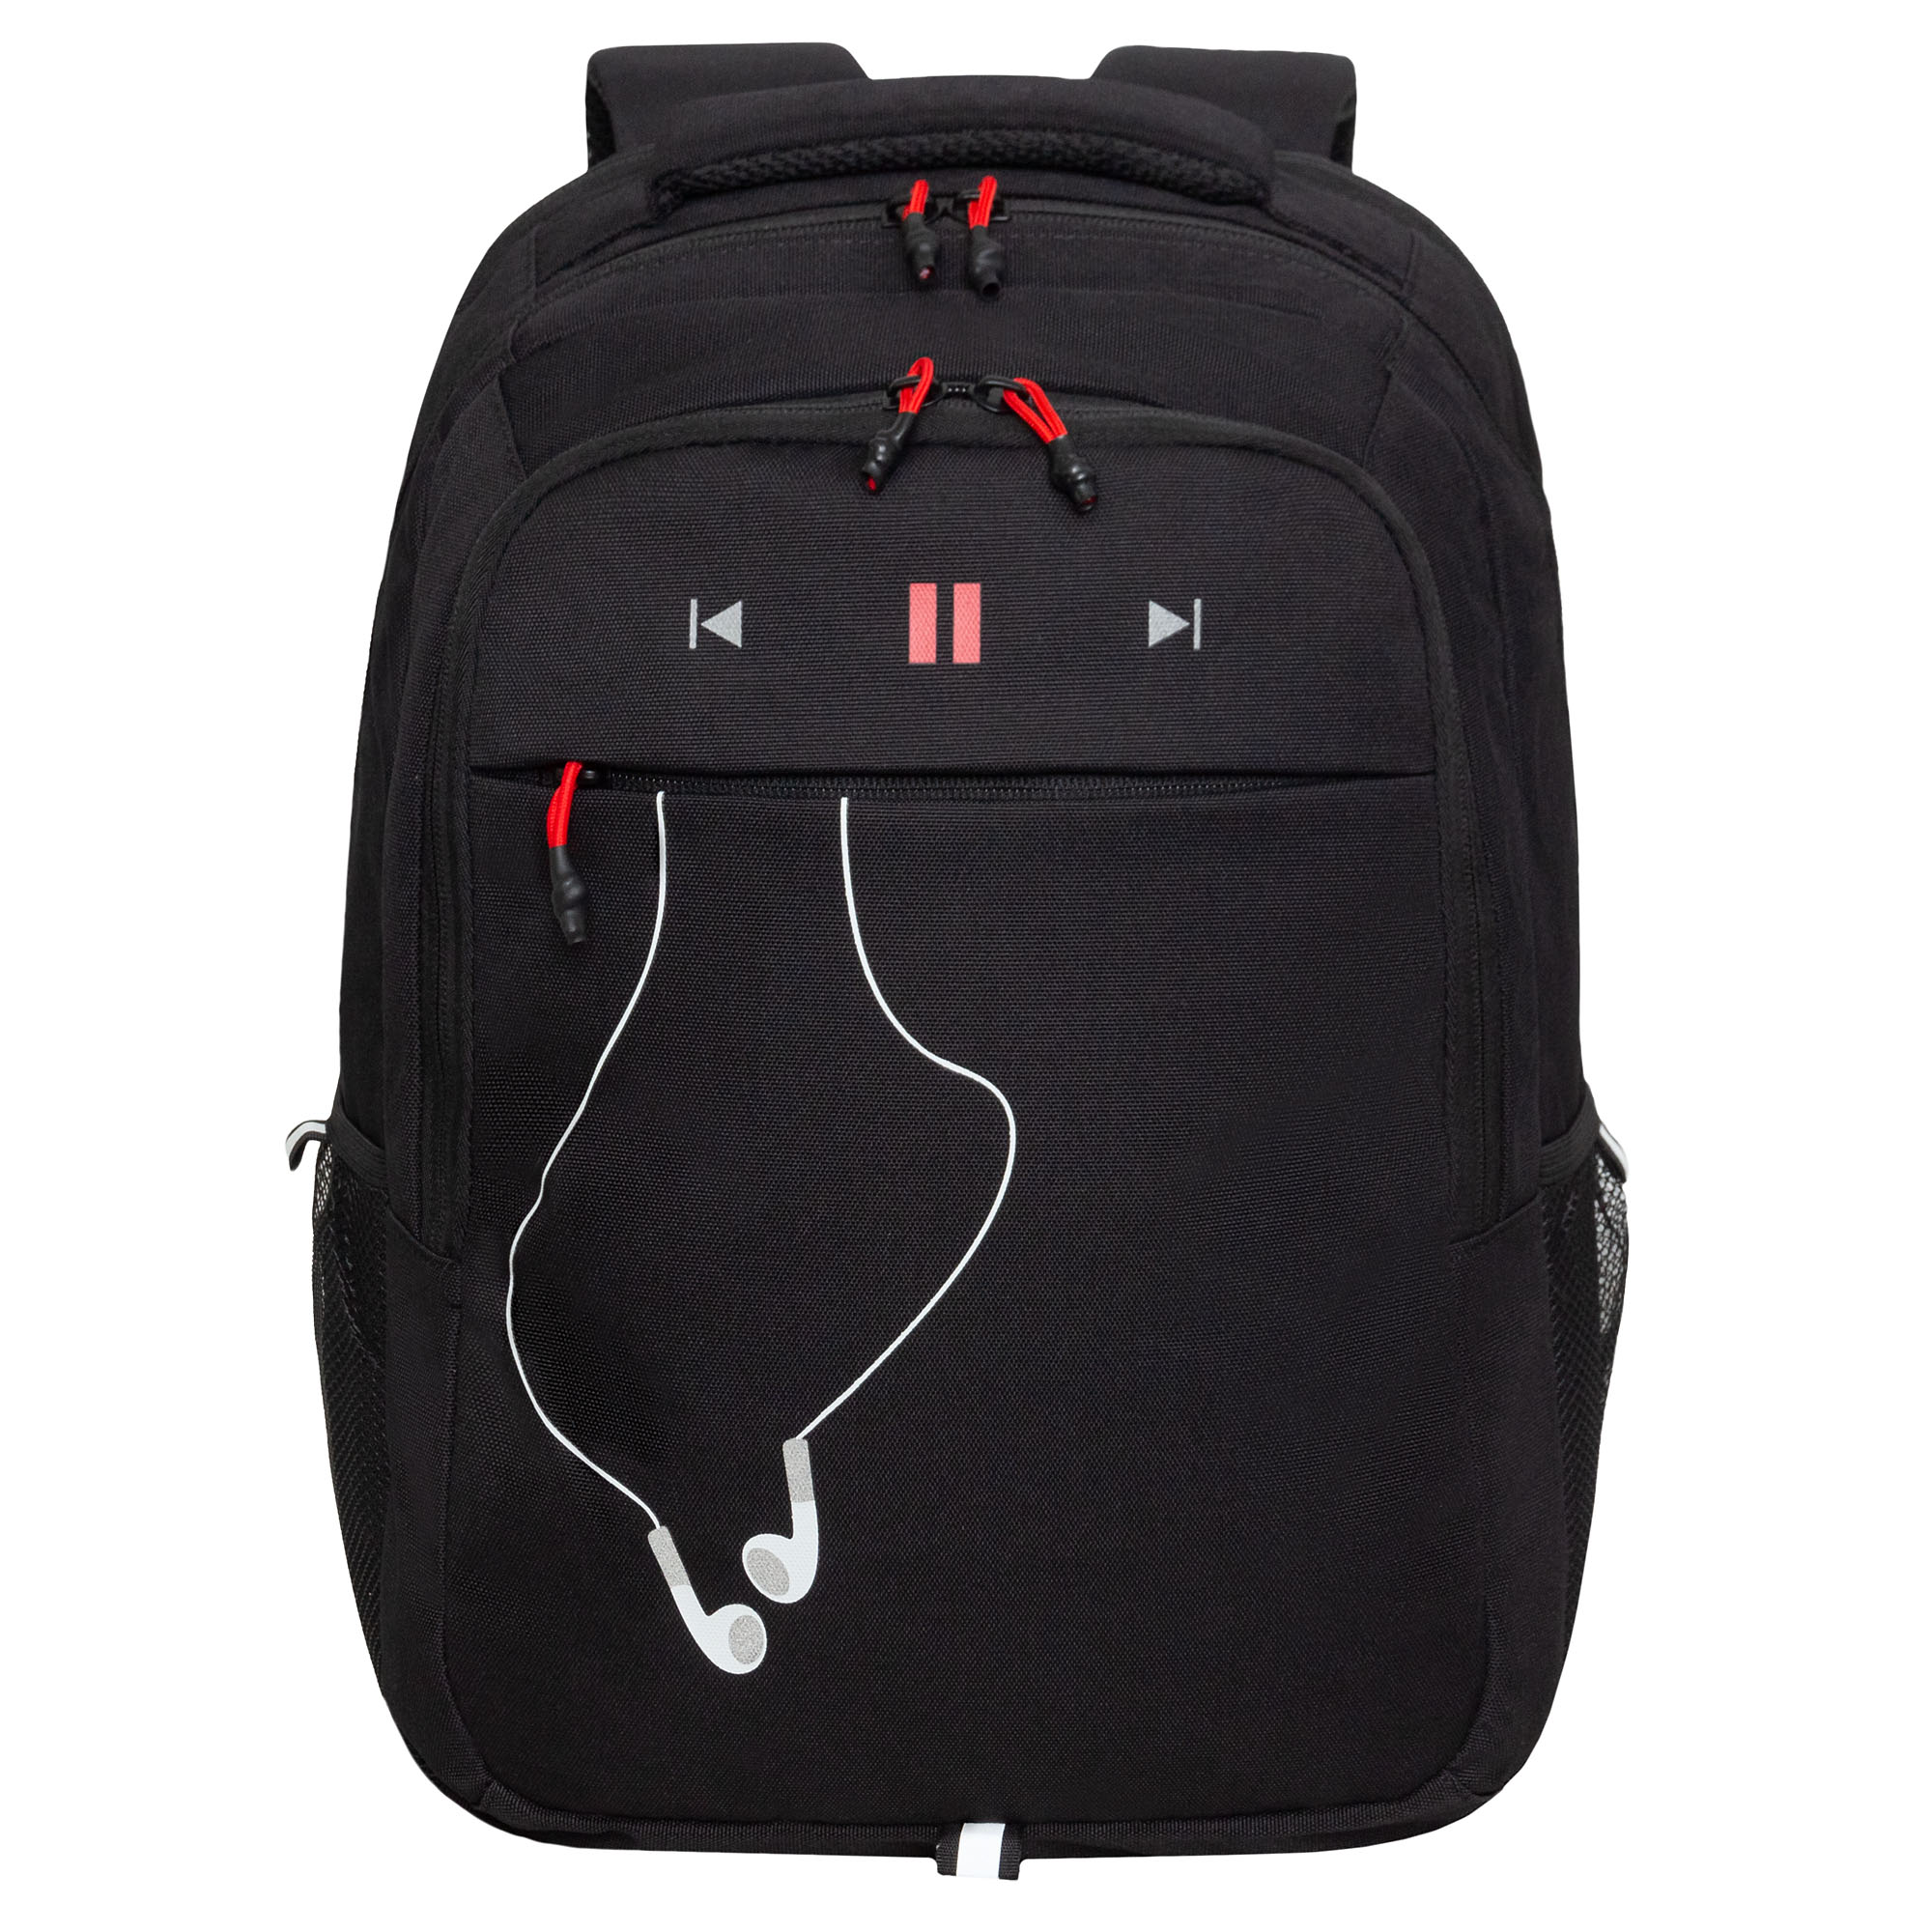 Рюкзак молодежный Grizzly с карманом для ноутбука 15, RU-432-4/2, черный, красный рюкзак для ноутбука razer concourse pro 17 3 rc81 02920101 0500